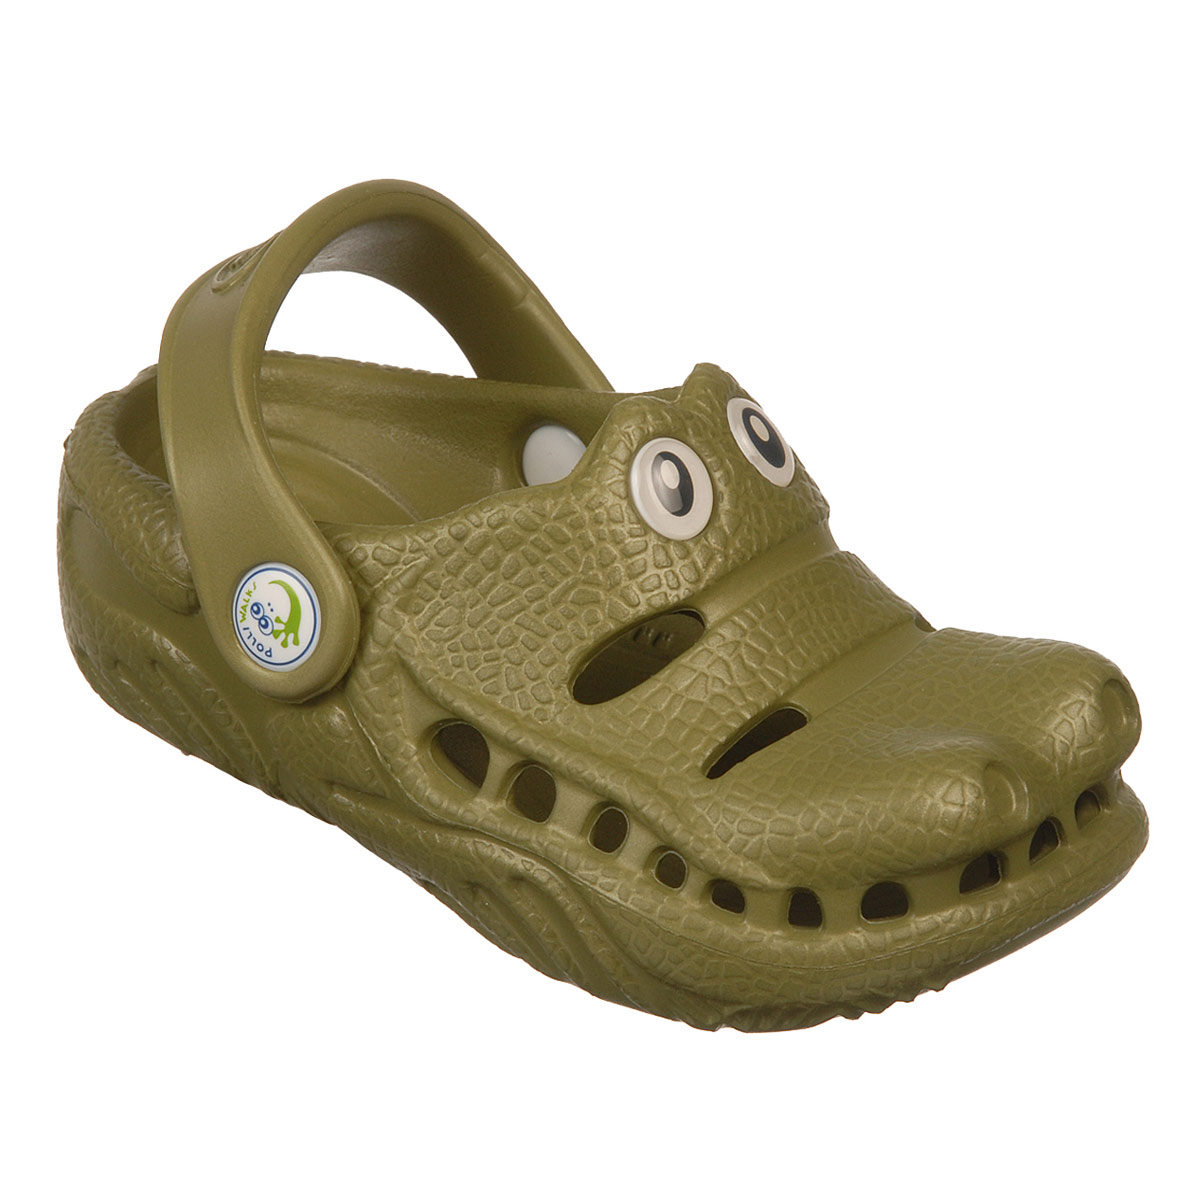 Polliwalks : Toddler shoes Gator ?Green # 10